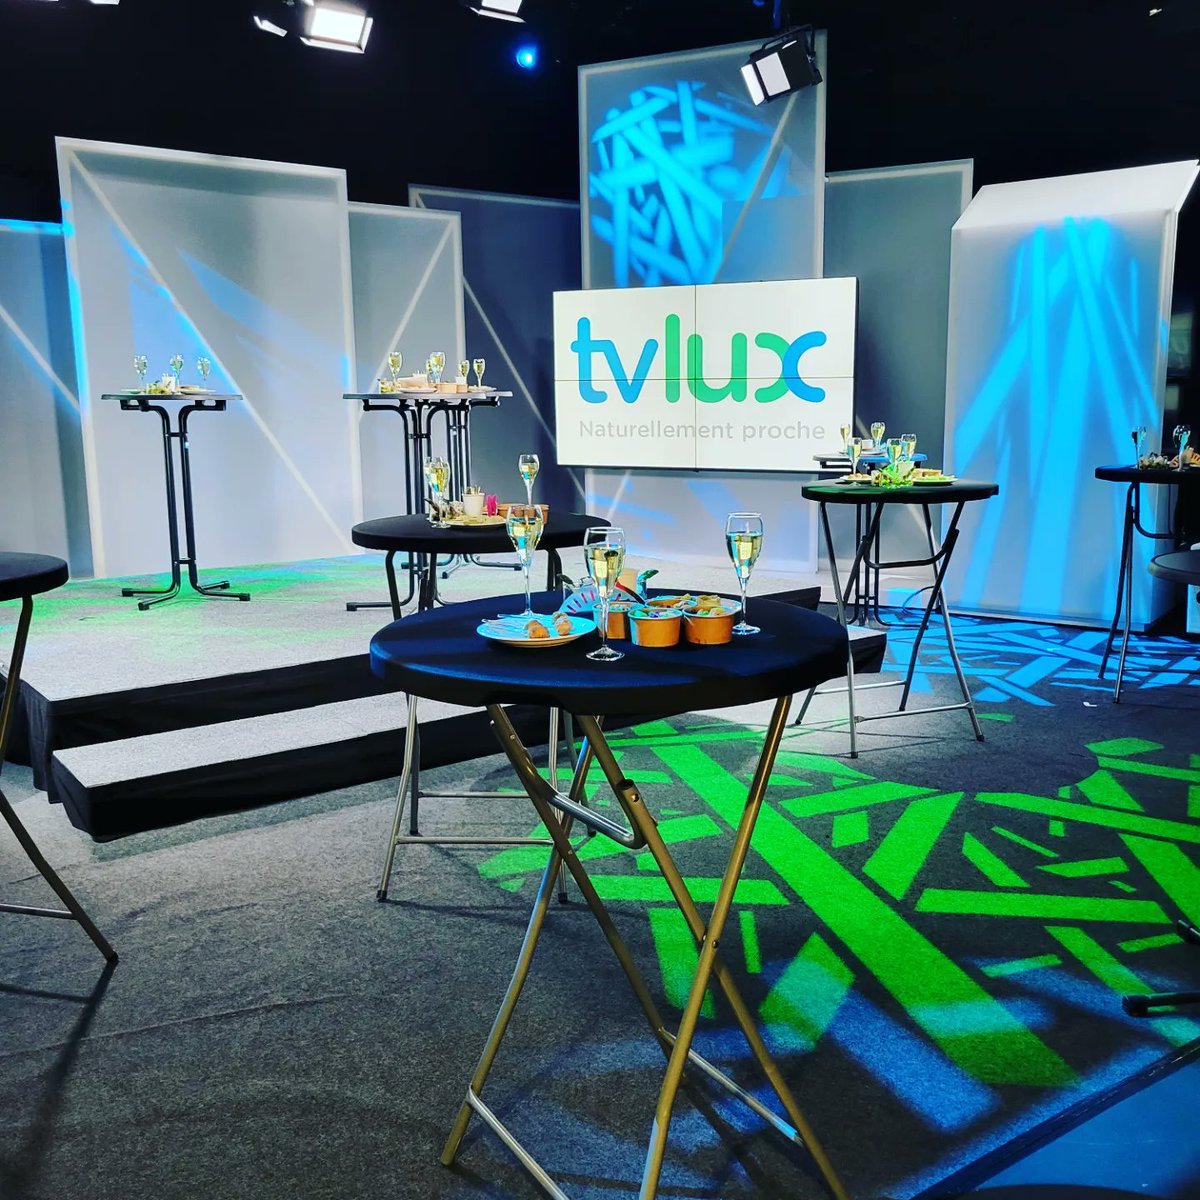 Accueil de notre nouveau directeur Nicolas Léonard hier midi dans le grand studio de TV Lux. Welcome ! 🍾🥂